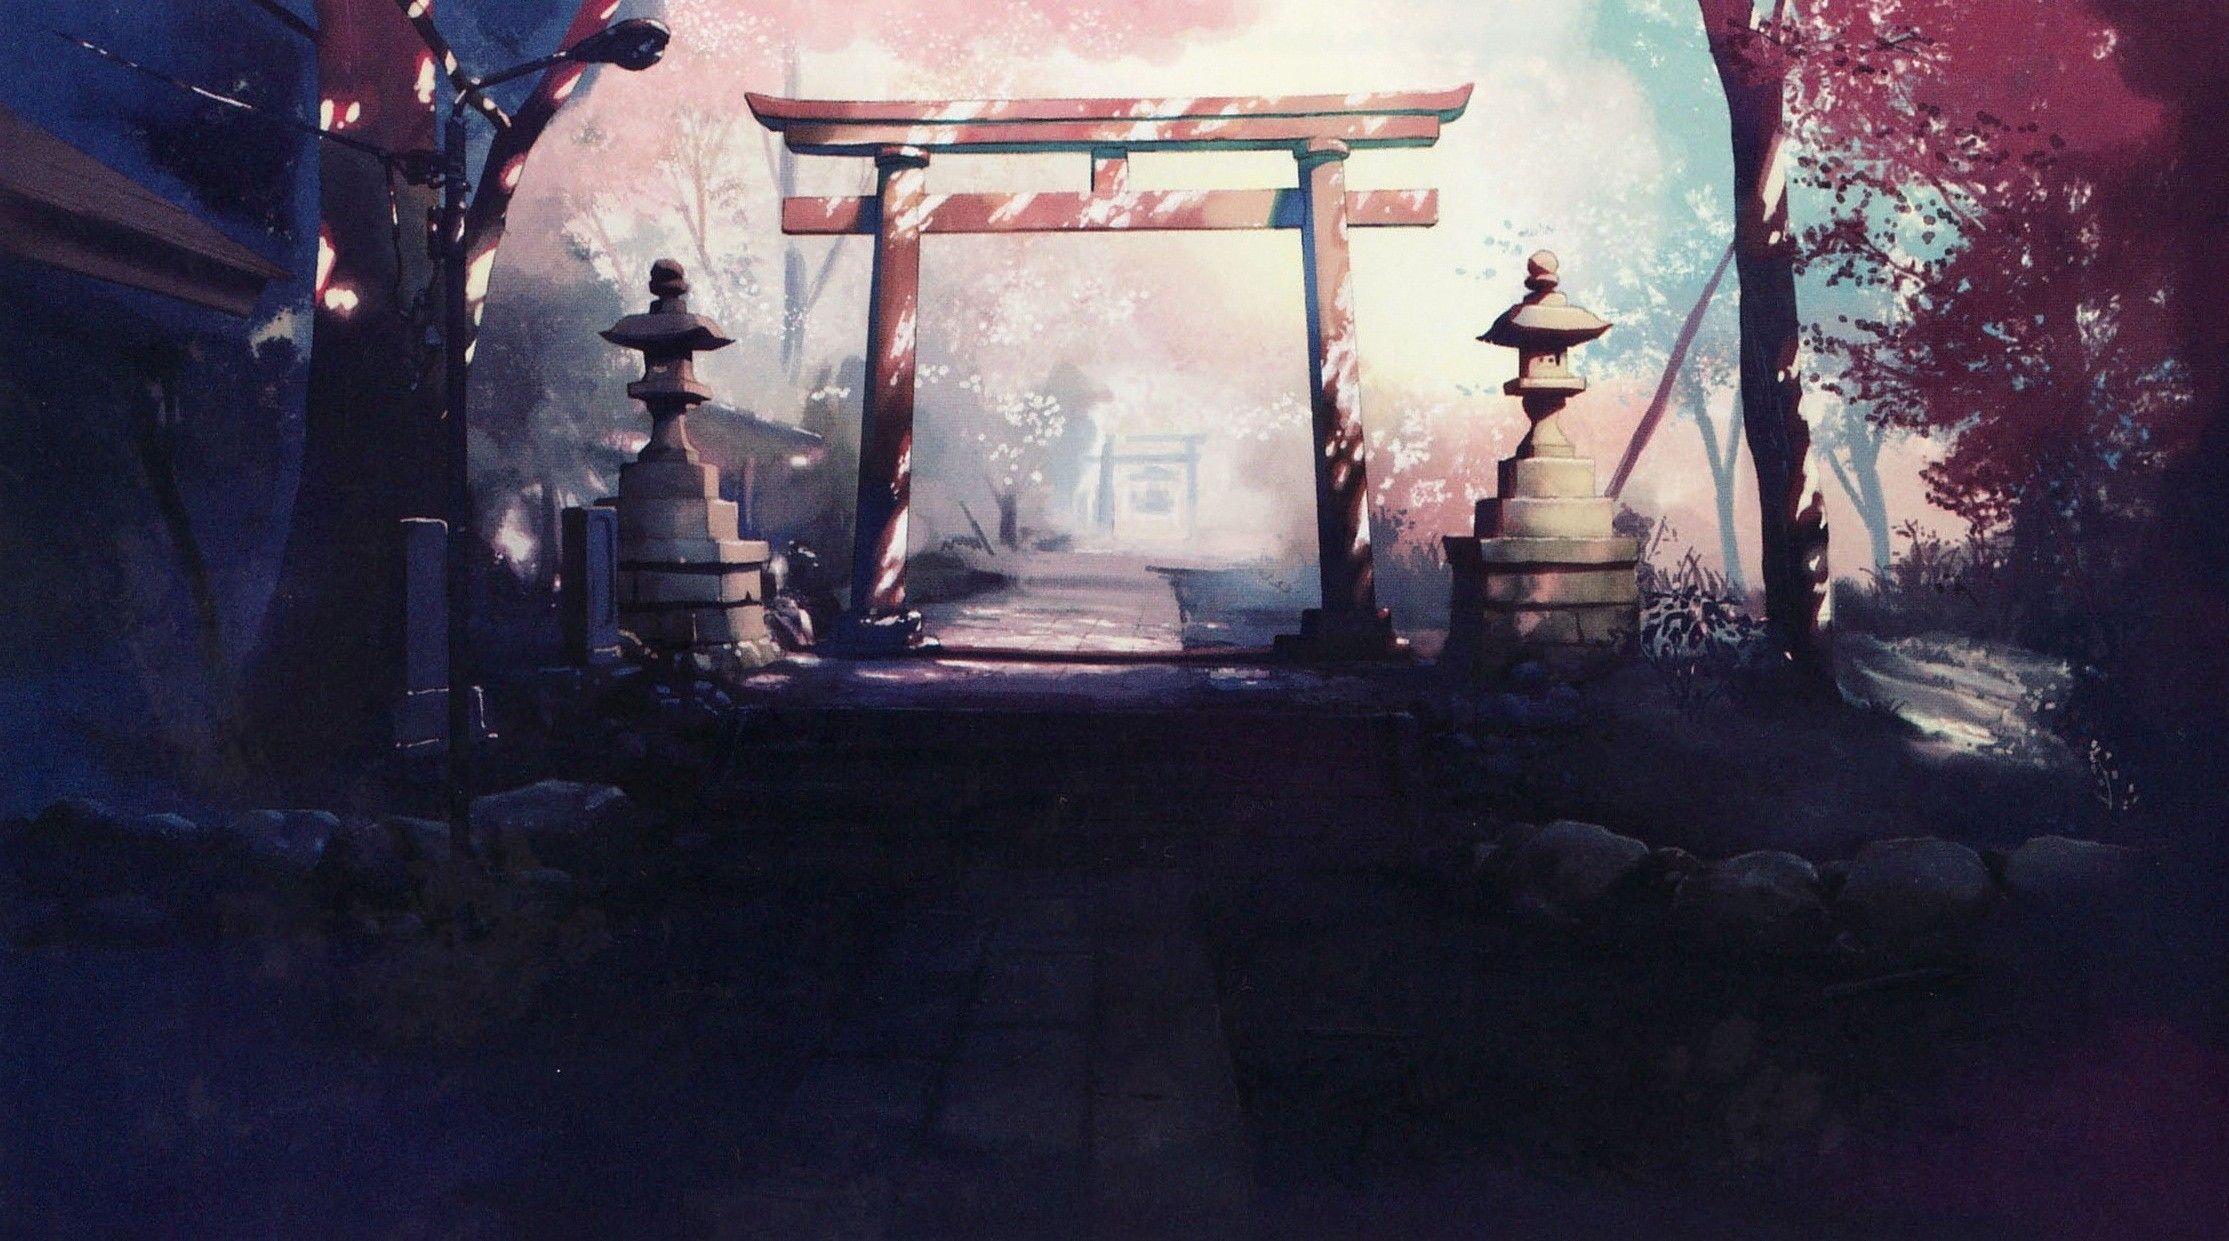 Anime Shrine Wallpaper Free Anime Shrine Background